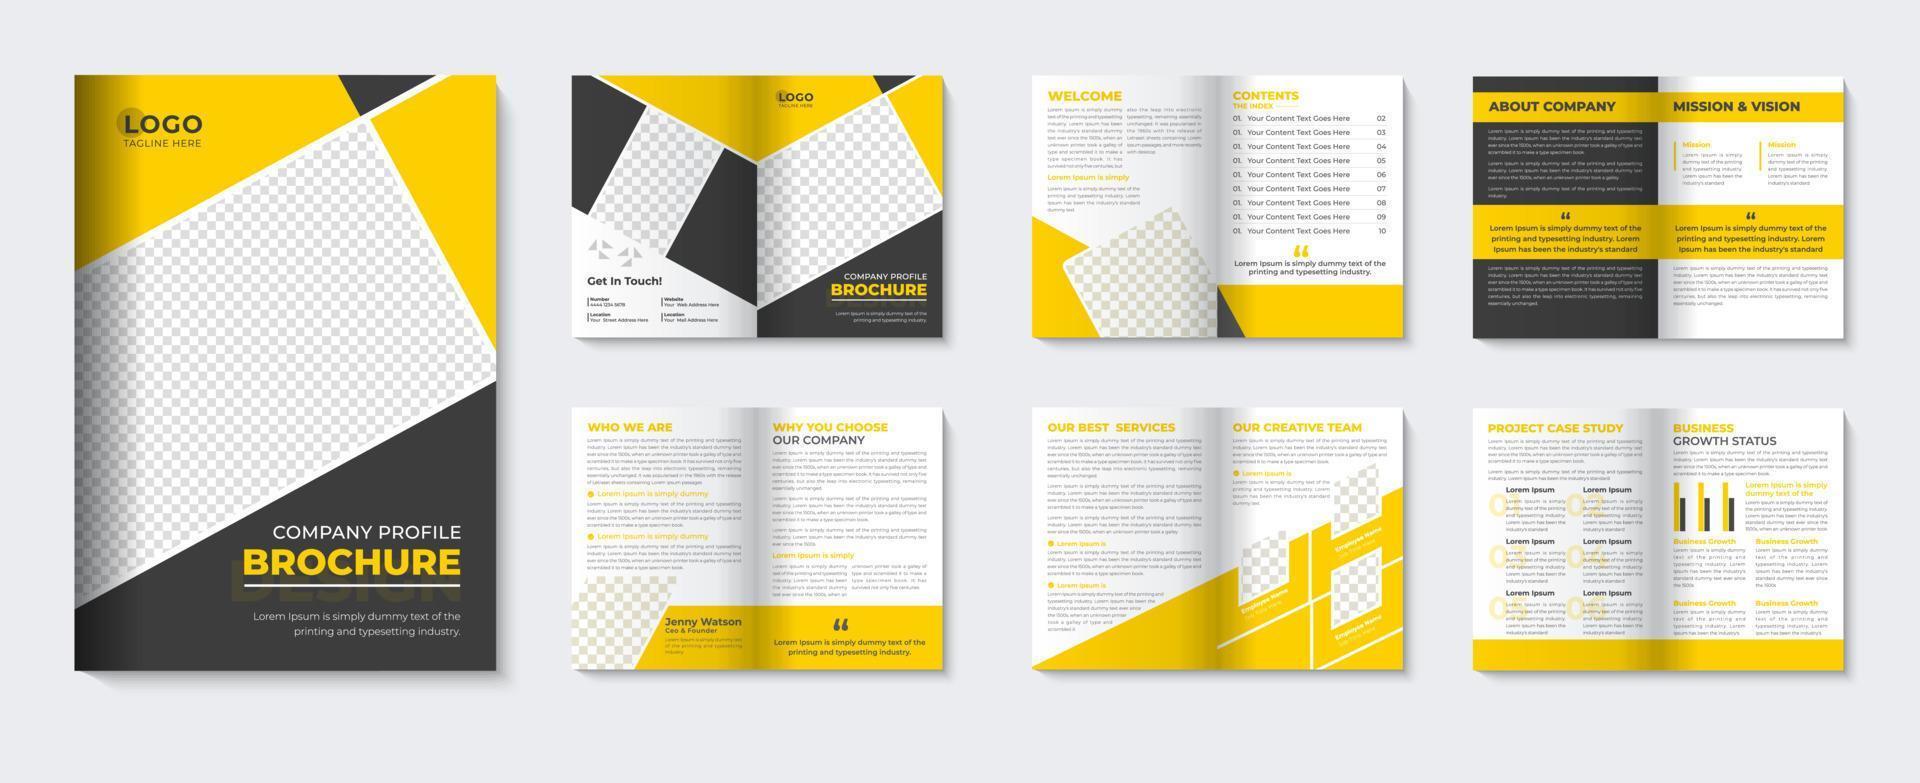 plantilla de folleto corporativo y folleto minimalista folleto de portada de perfil de empresa diseño amarillo para agencia comercial vector